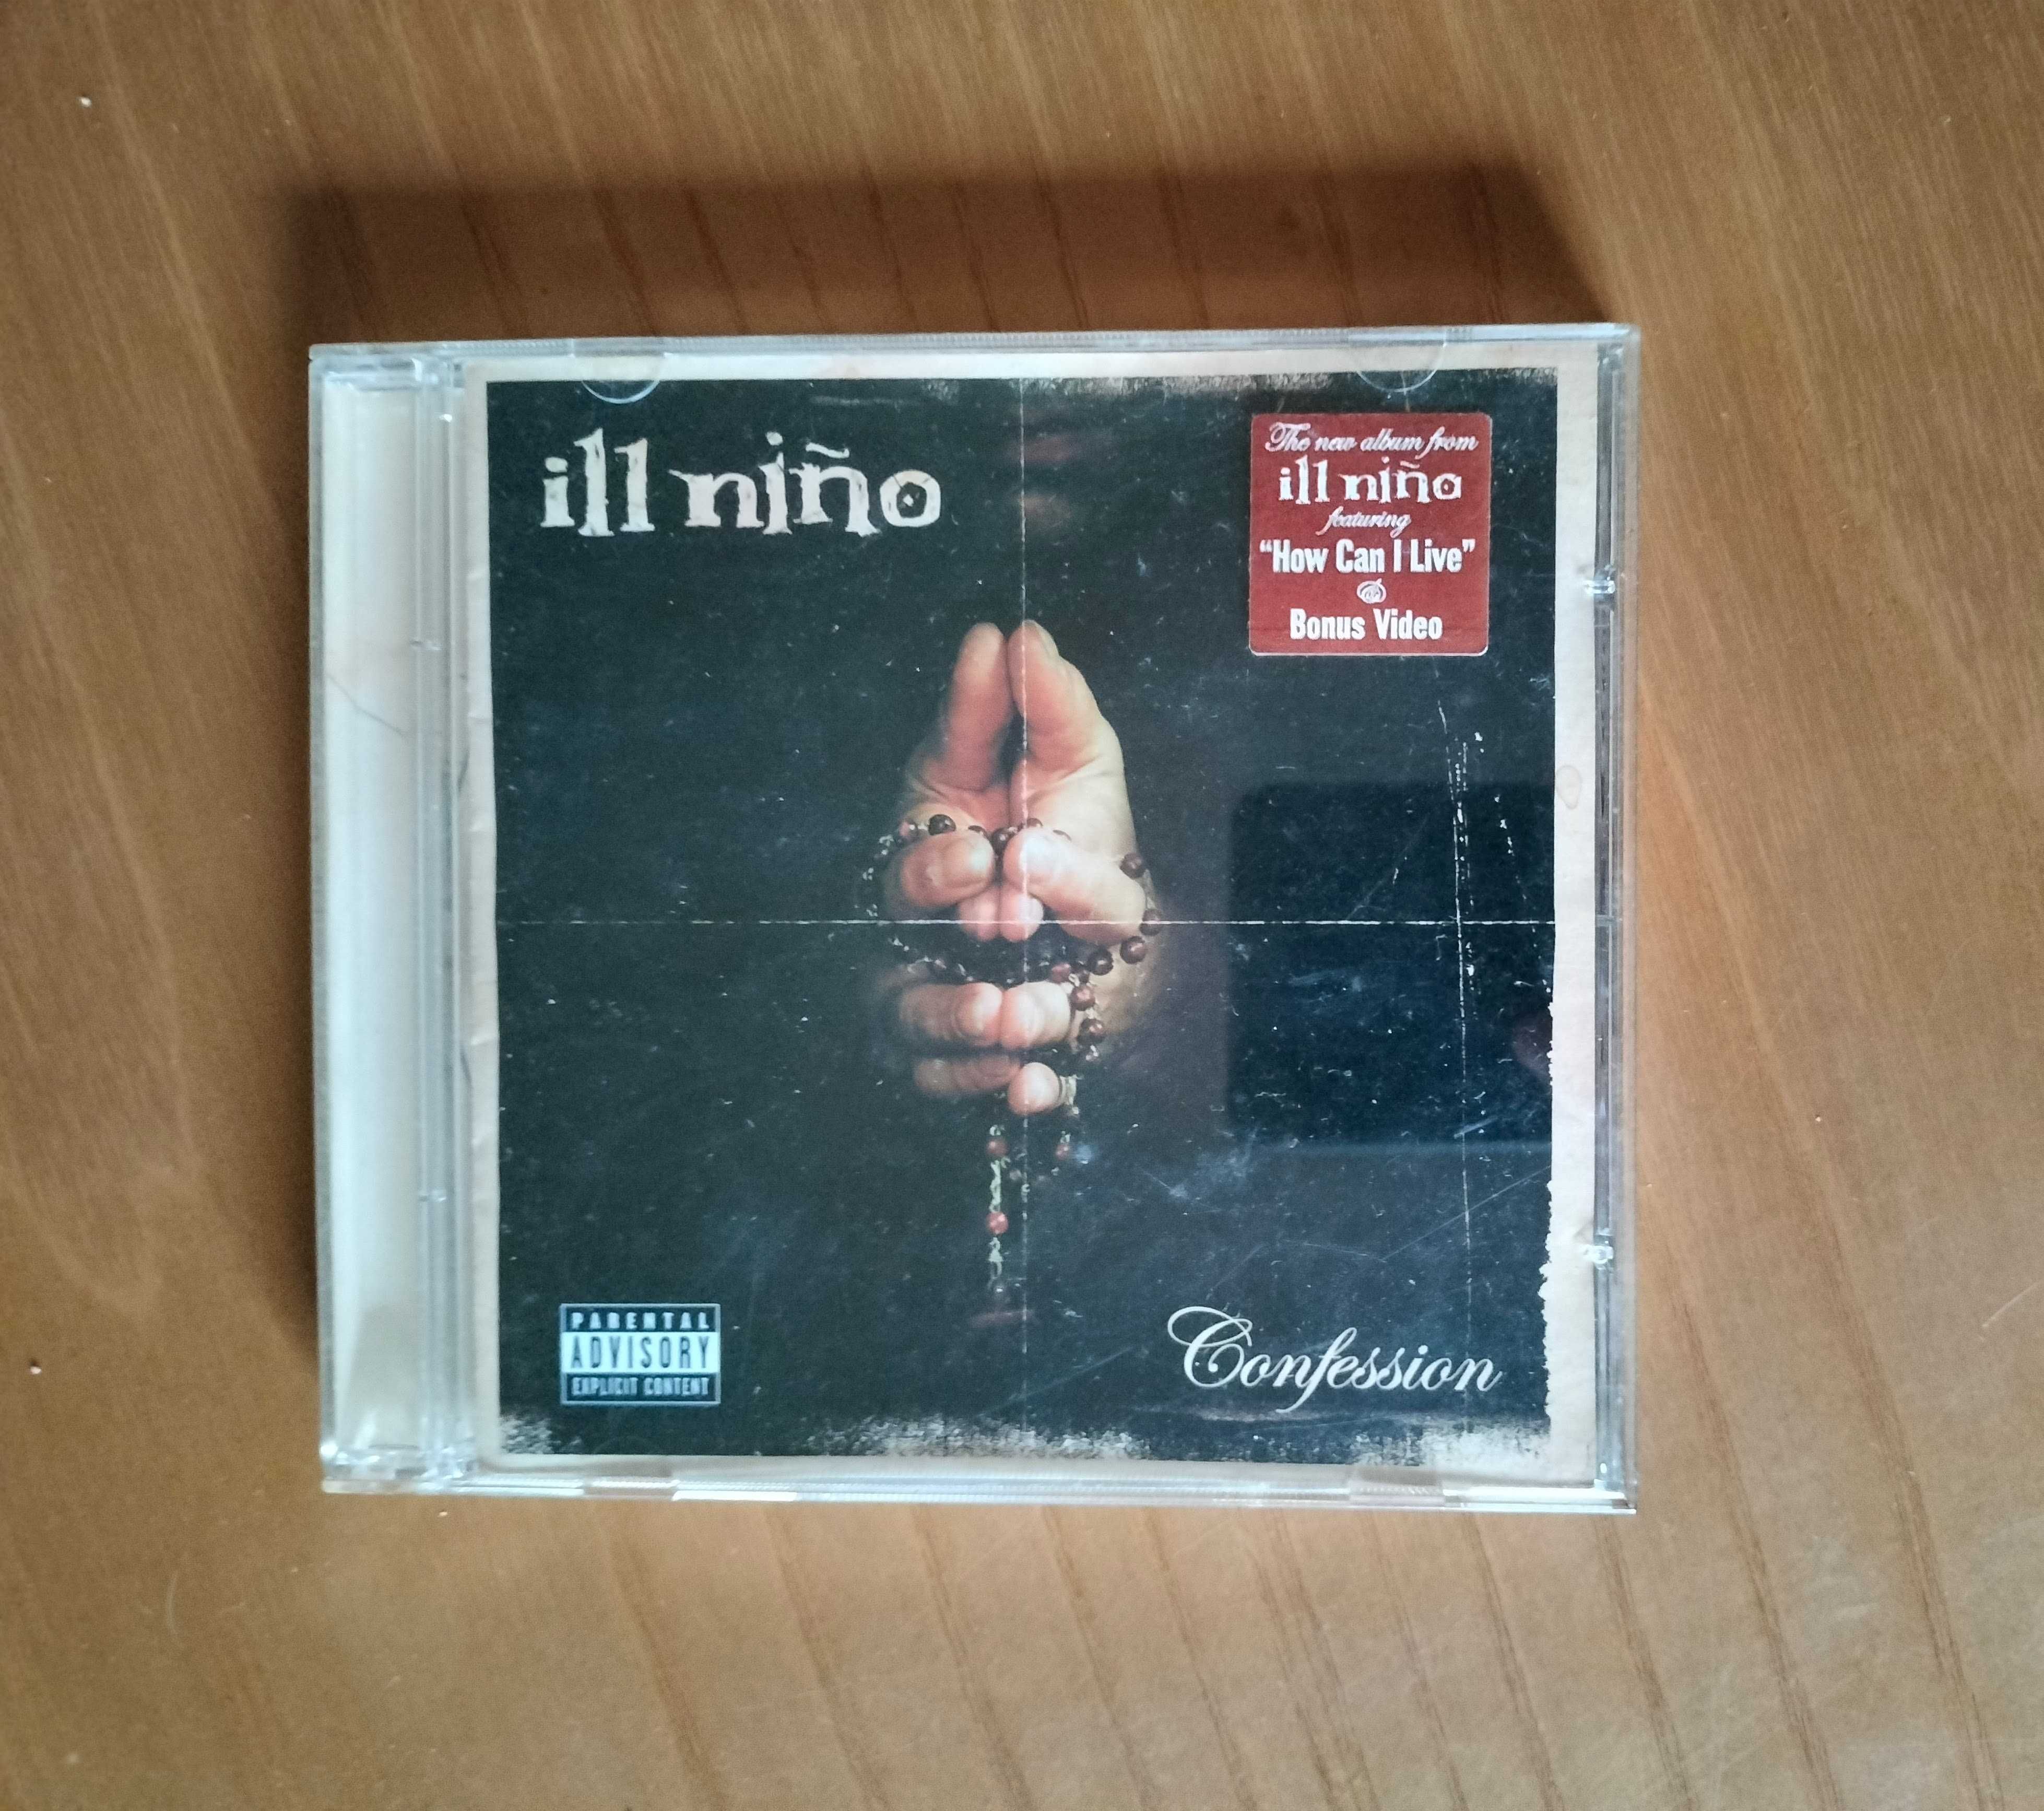 Ill Niño - Confession